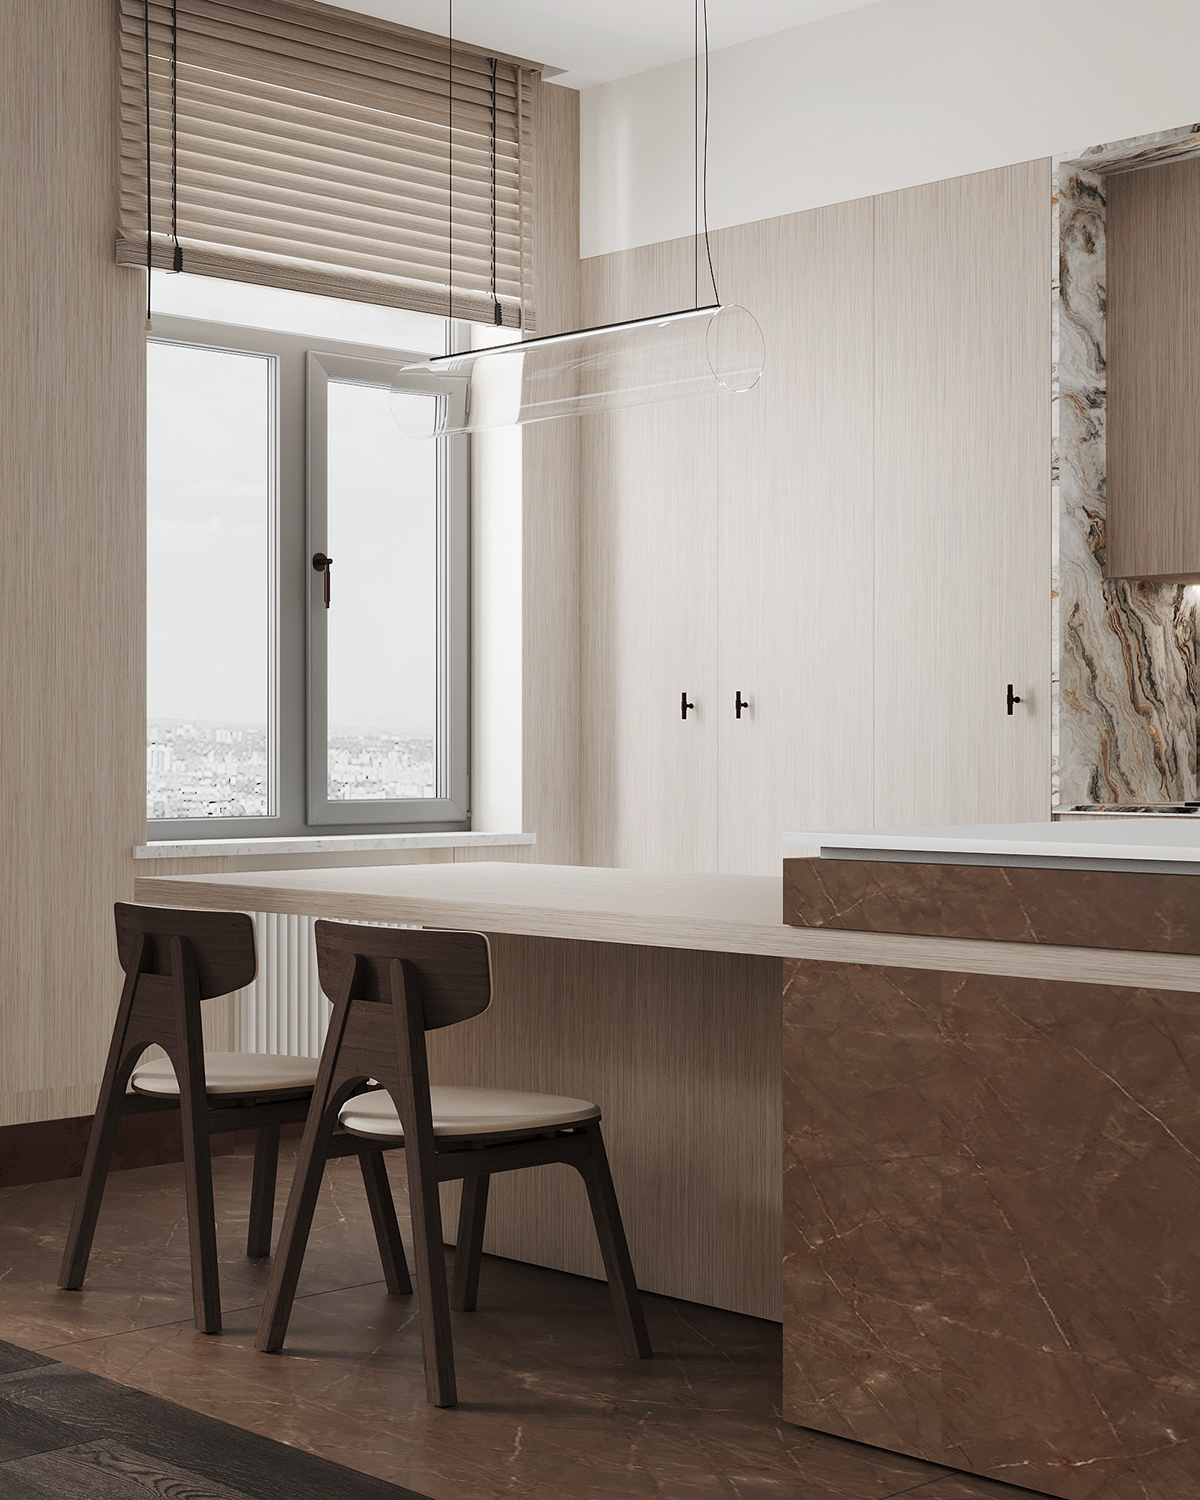 design Interior kitchen